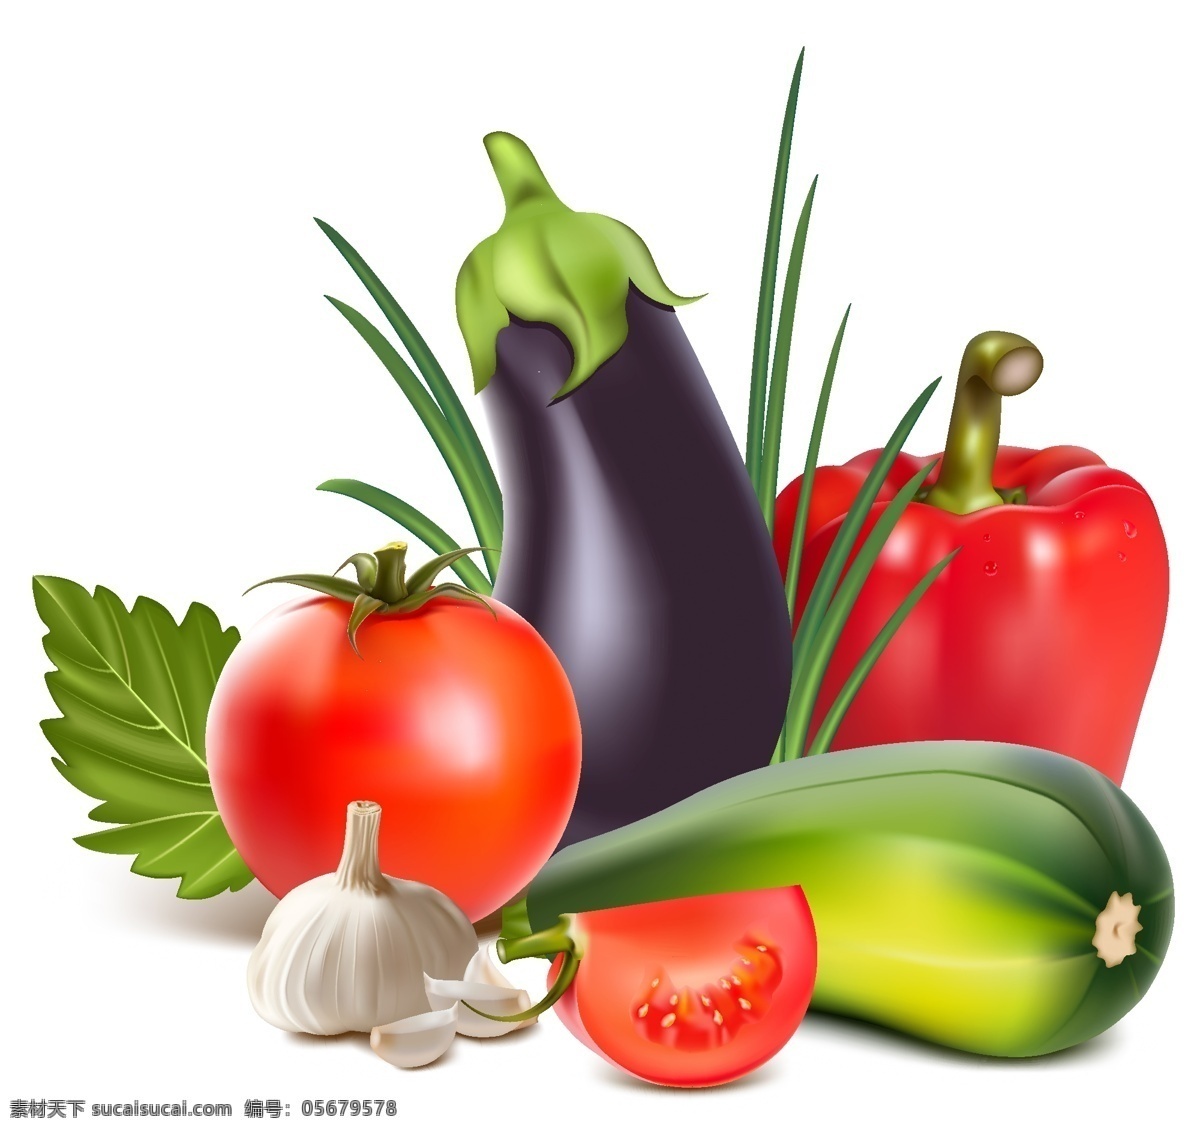 手绘蔬菜矢量 茄子 西红柿 青椒 大蒜 手绘 蔬菜 矢量 蔬菜水果 卡通设计